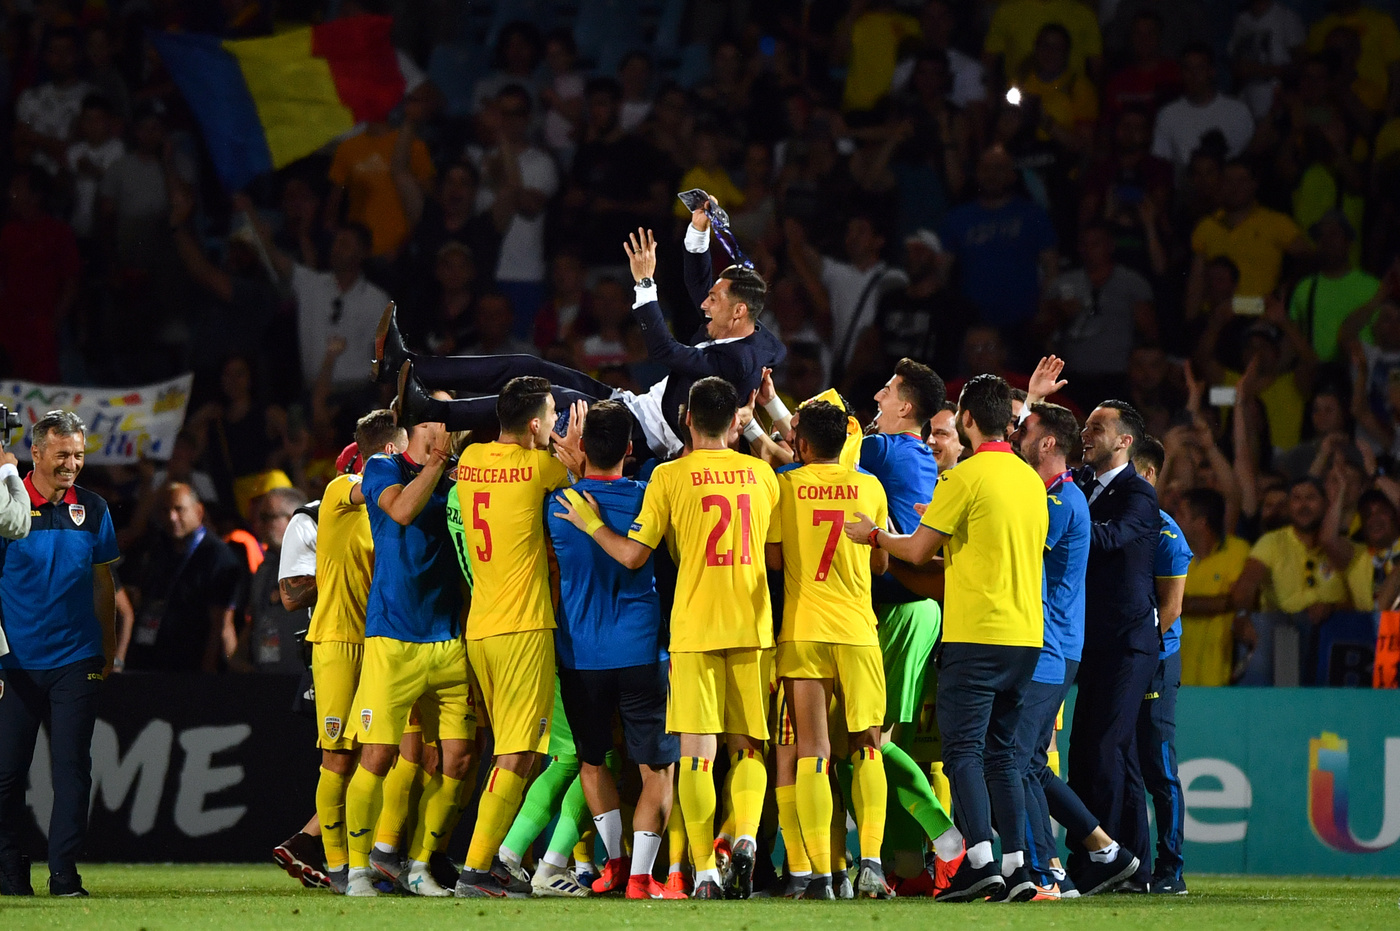 Germania-Romania 27 giugno: si gioca per le semifinali degli Europei Under 21. I rumeni vogliono provare a stupire ancora. 